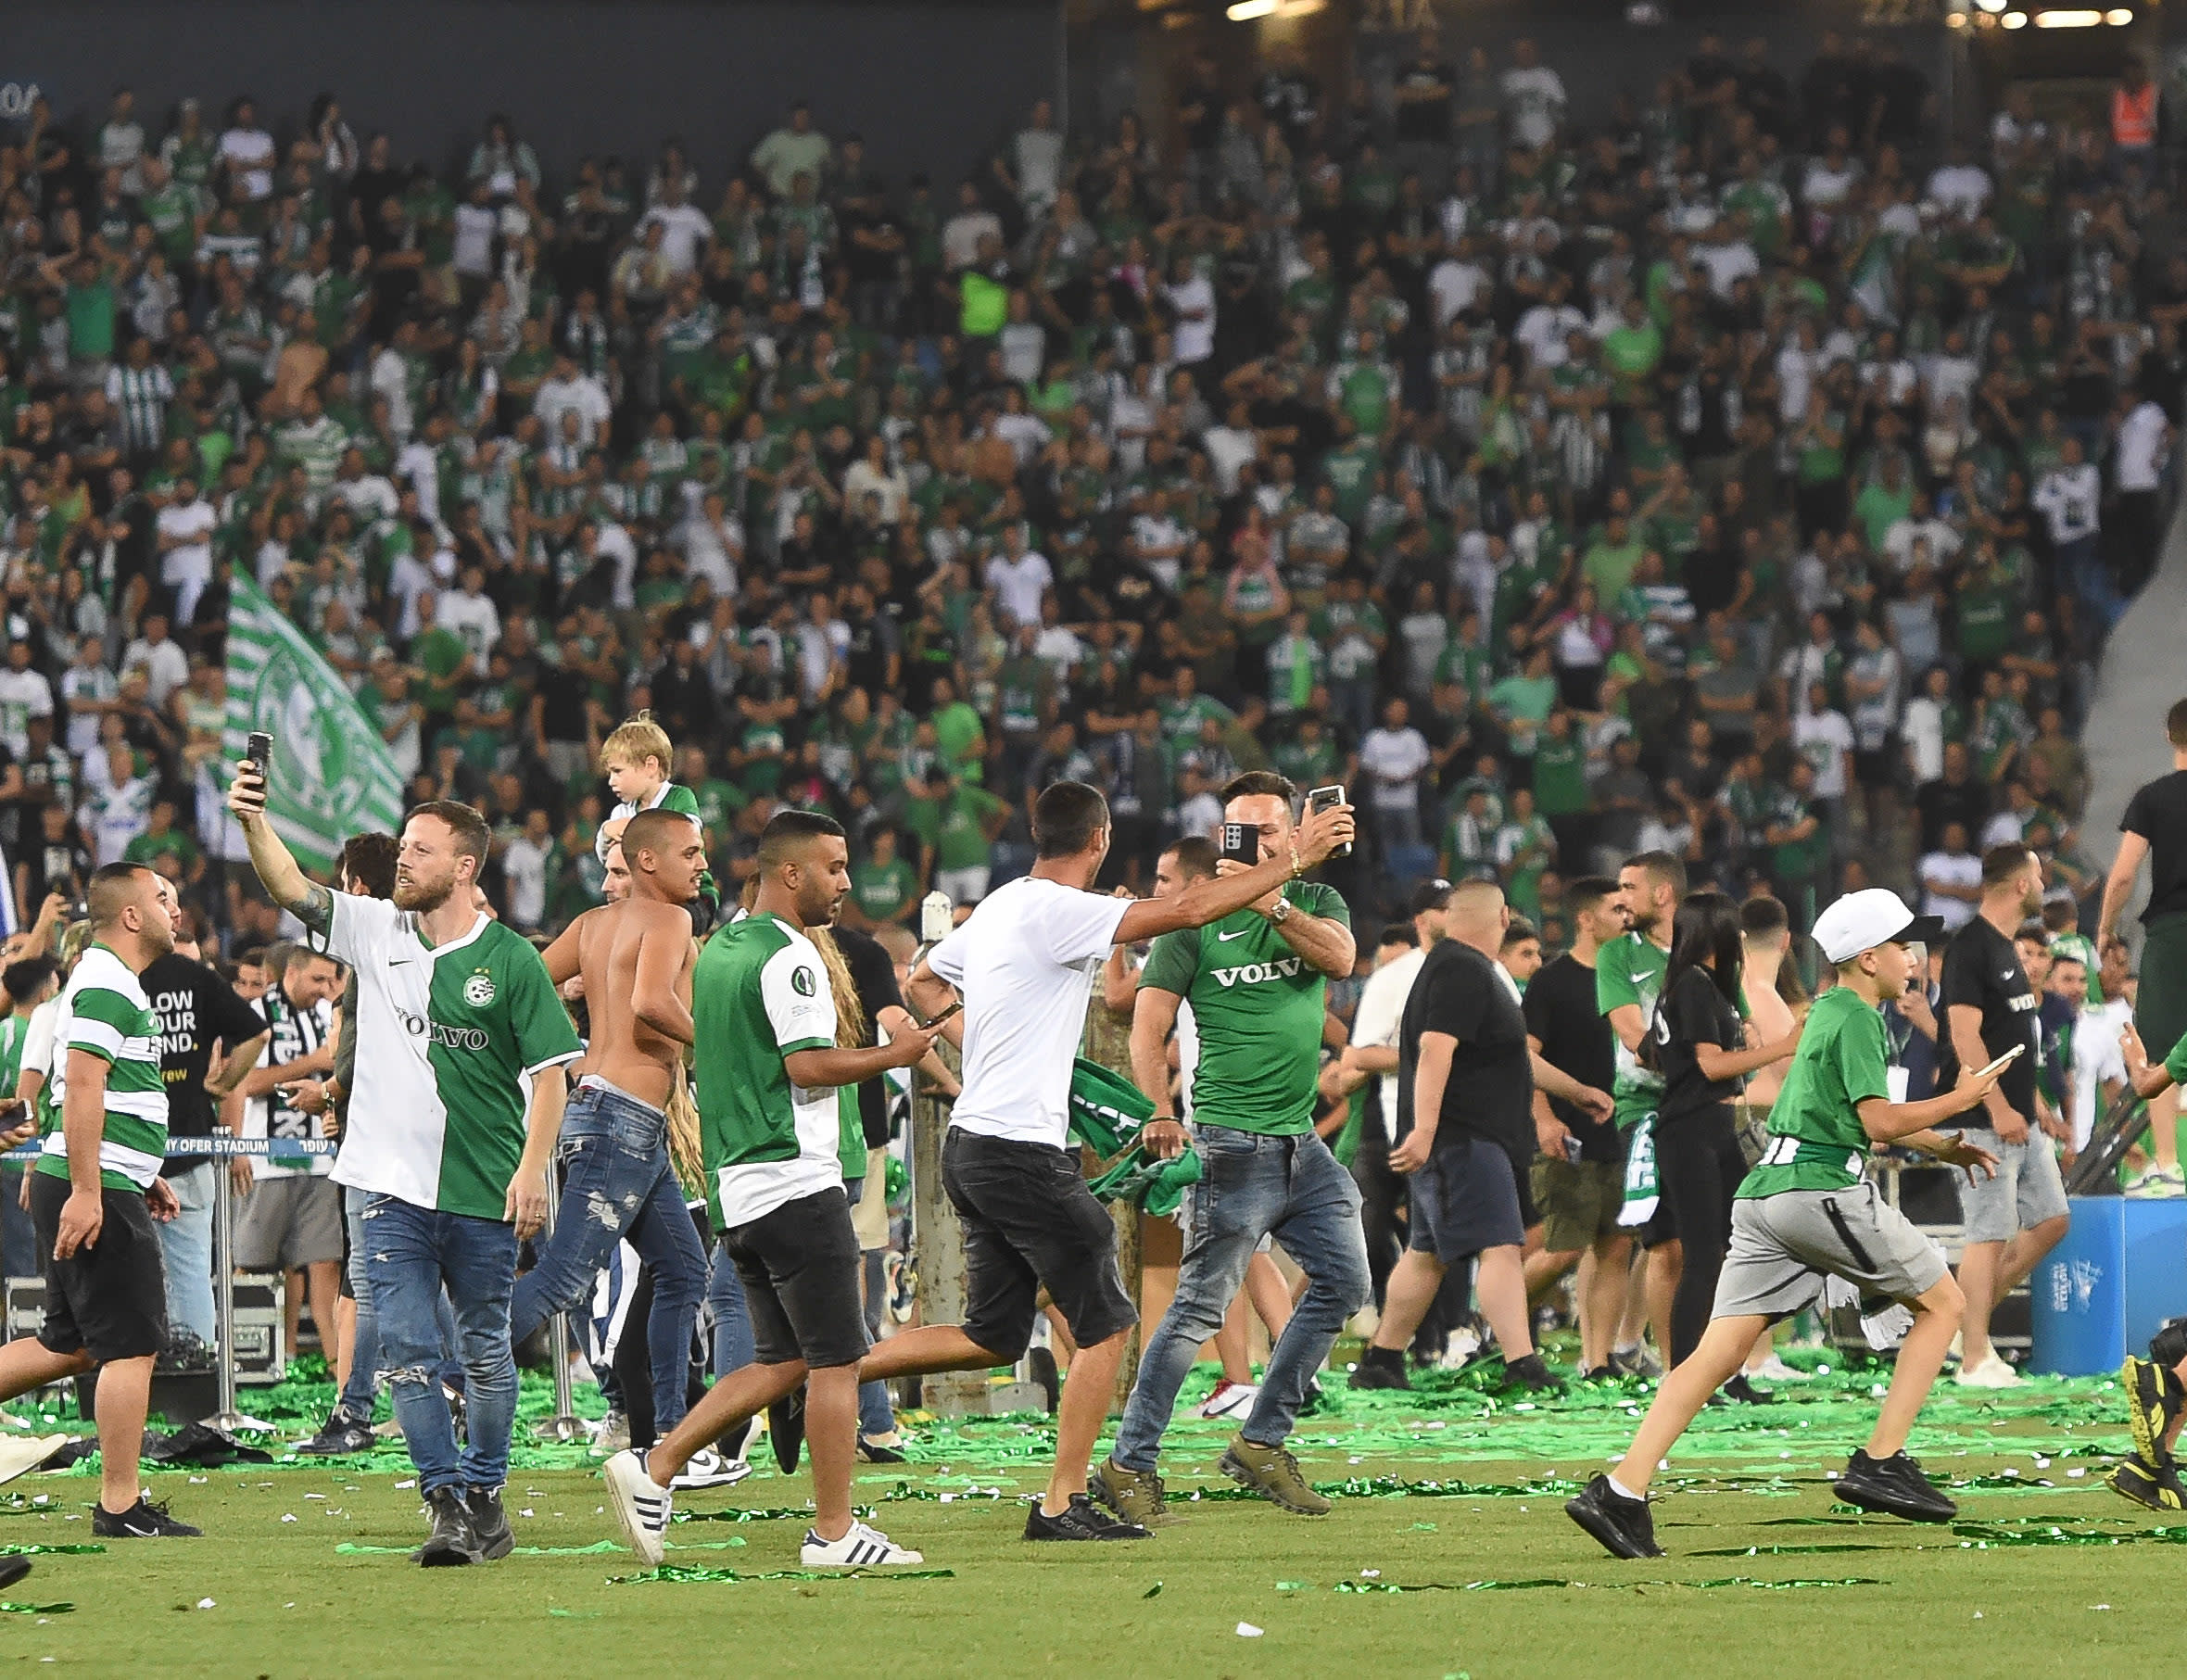 אוהדים של מכבי חיפה פורצים למגרש במהלך חגיגות האליפות